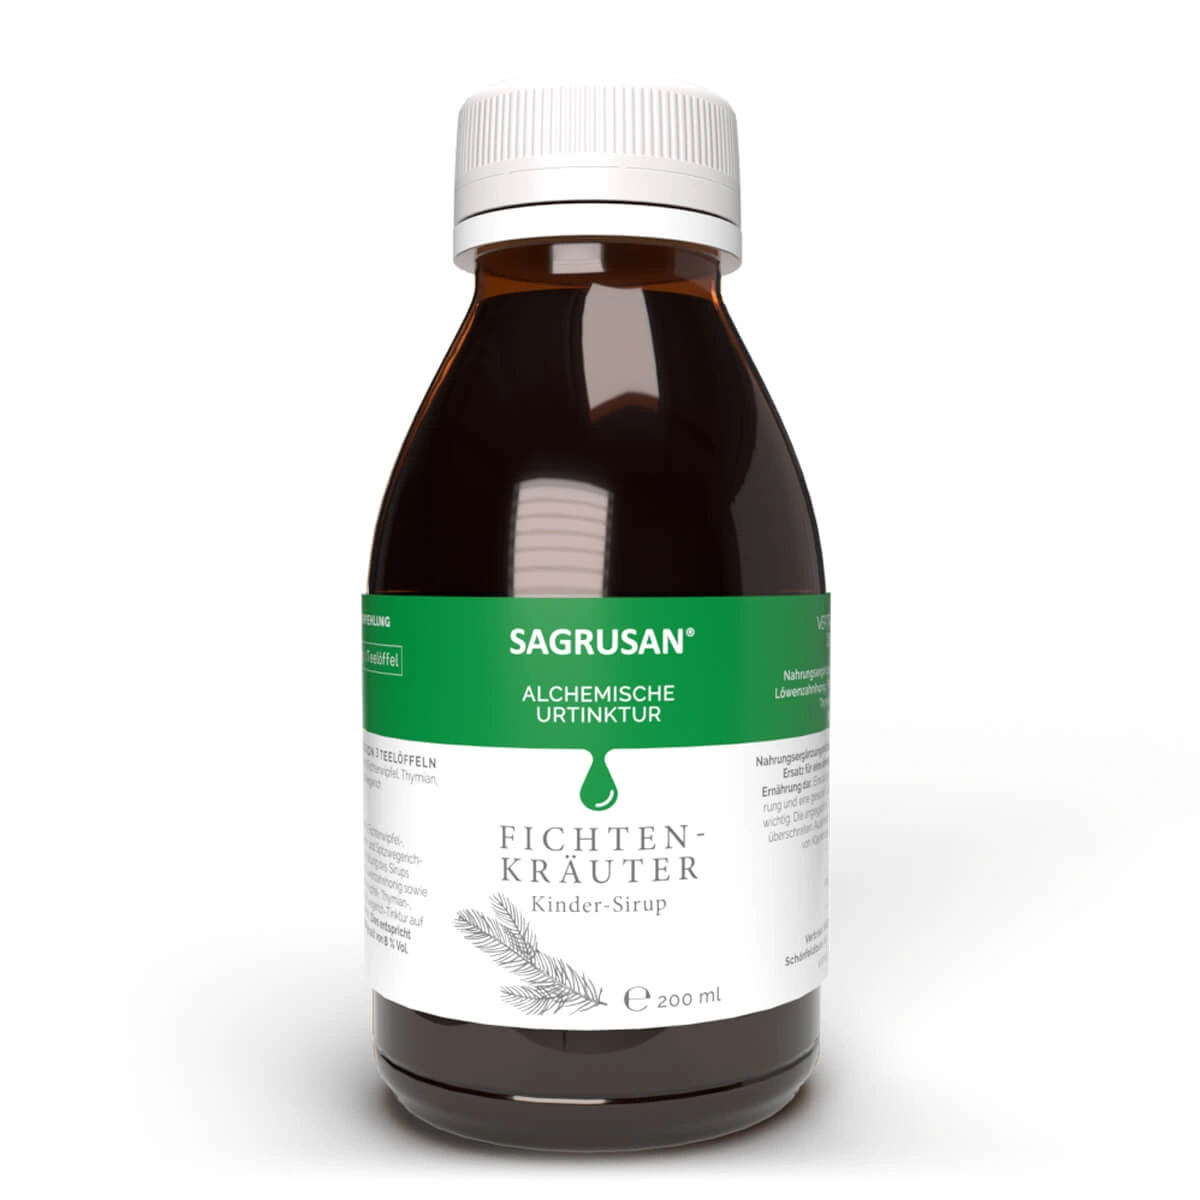 SAGRUSAN® Fichten-Kräuter Sirup KINDER, 200 ml 